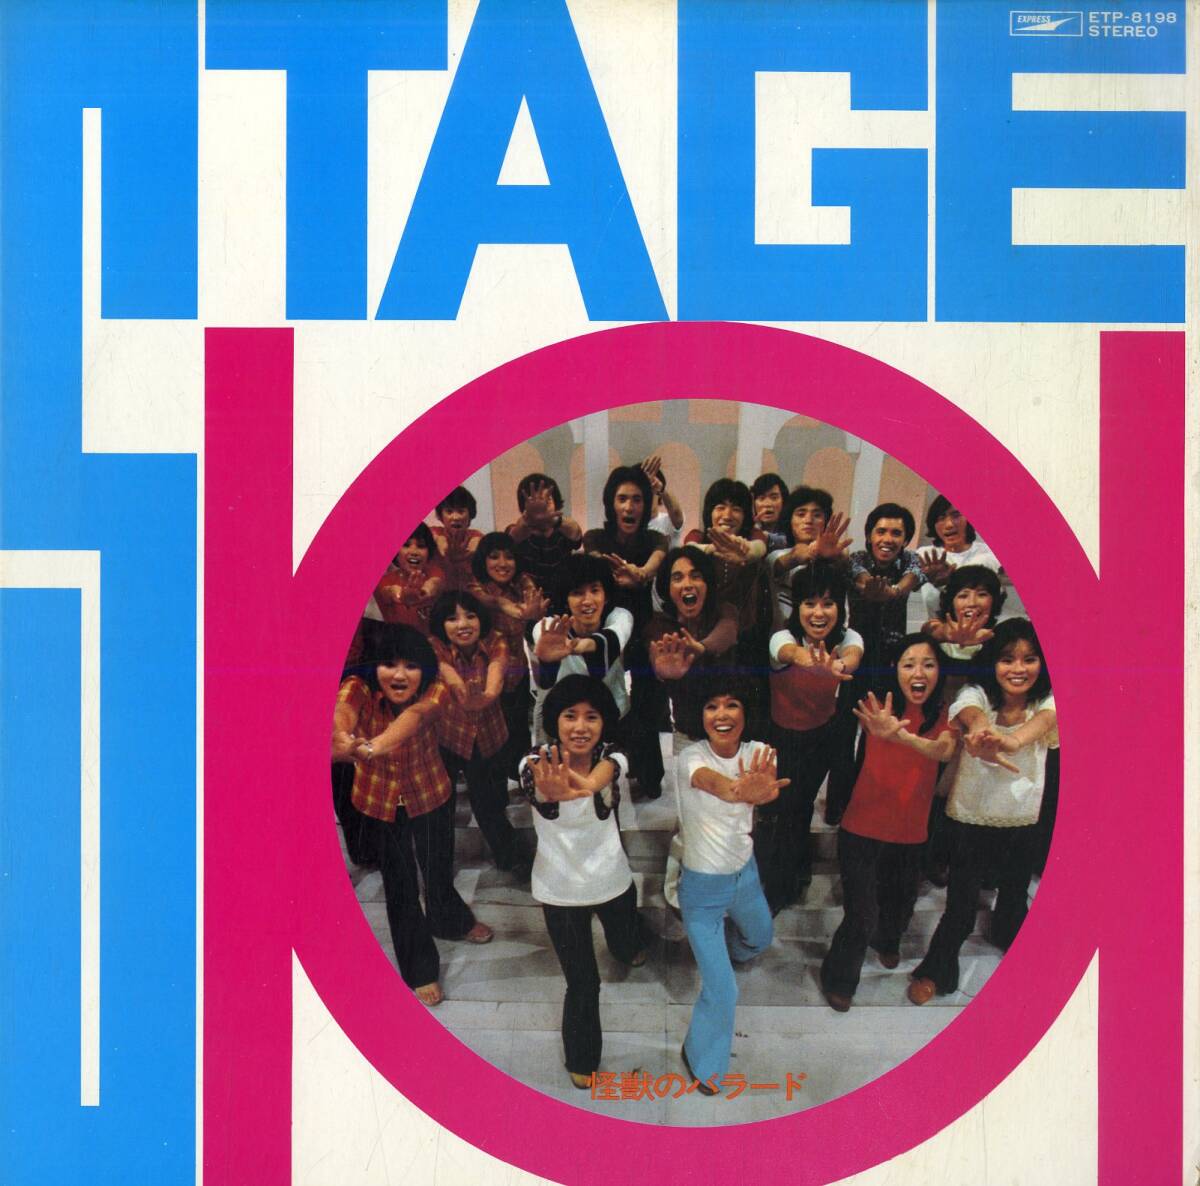 A00550294/LP/ステージ101「Stage 101 怪獣のバラード (1972年・ETP-8198)」_画像1